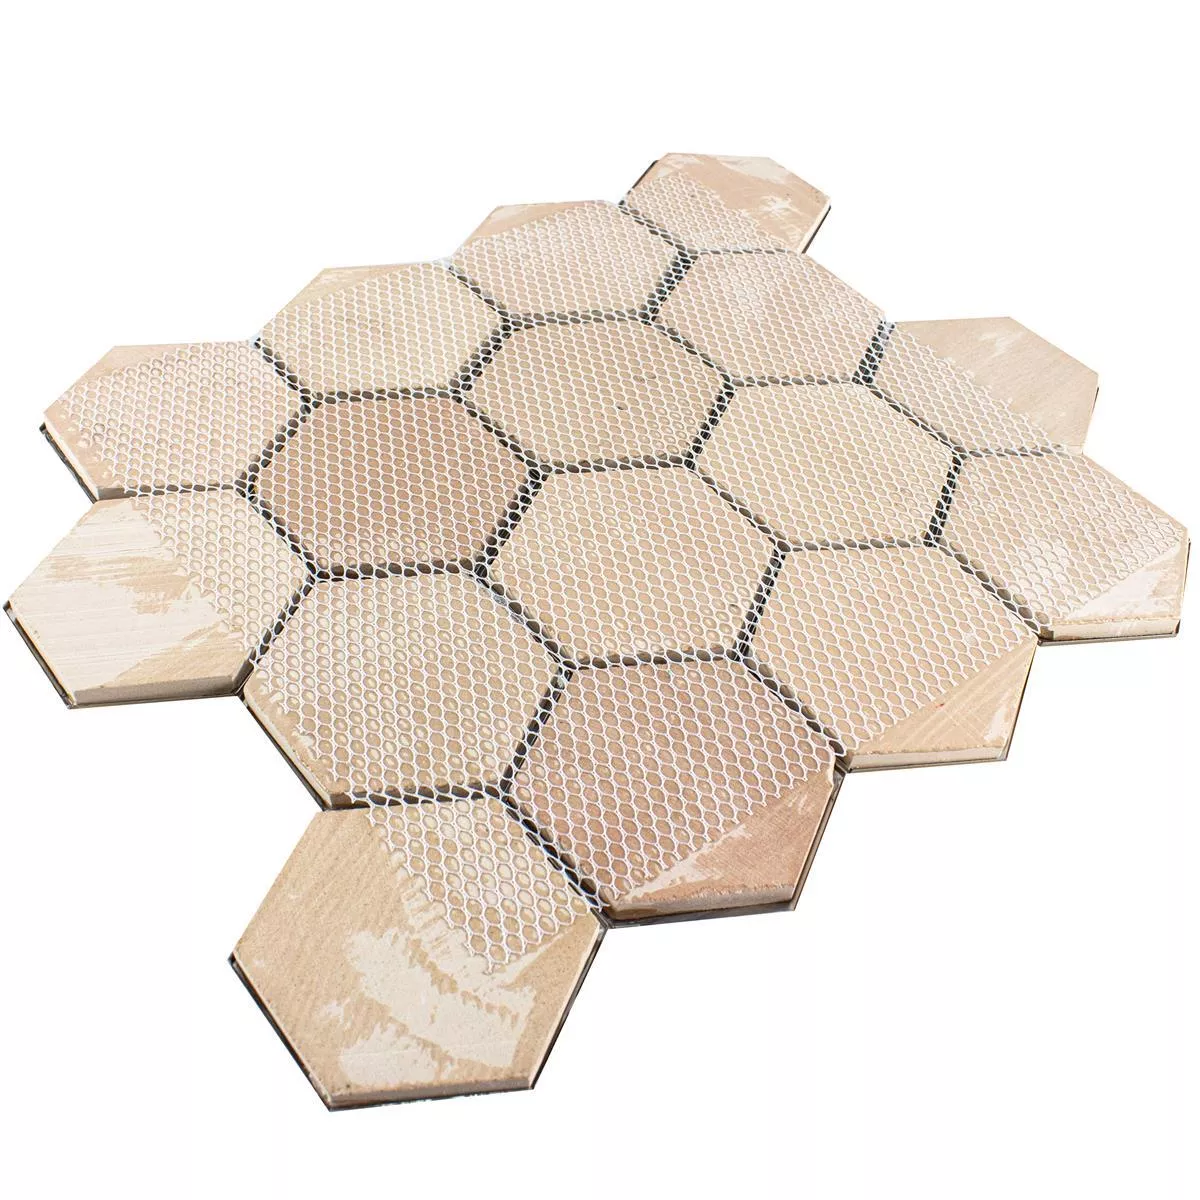 Prov Rostfritt Stål Mosaik Durango Hexagon 3D Brun